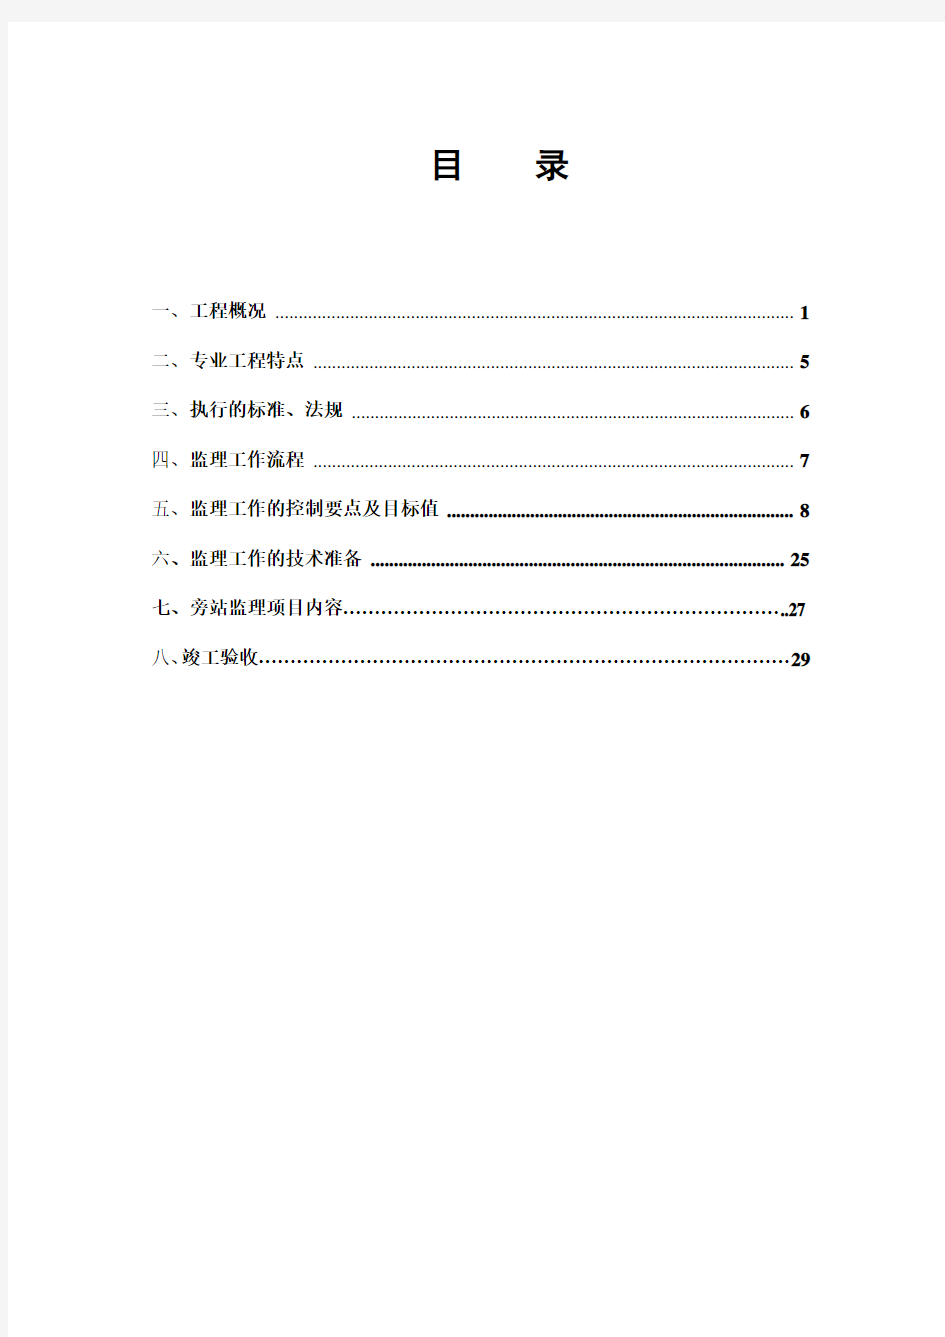 灌溉水工程监理实施细则(修改)2014.1.7